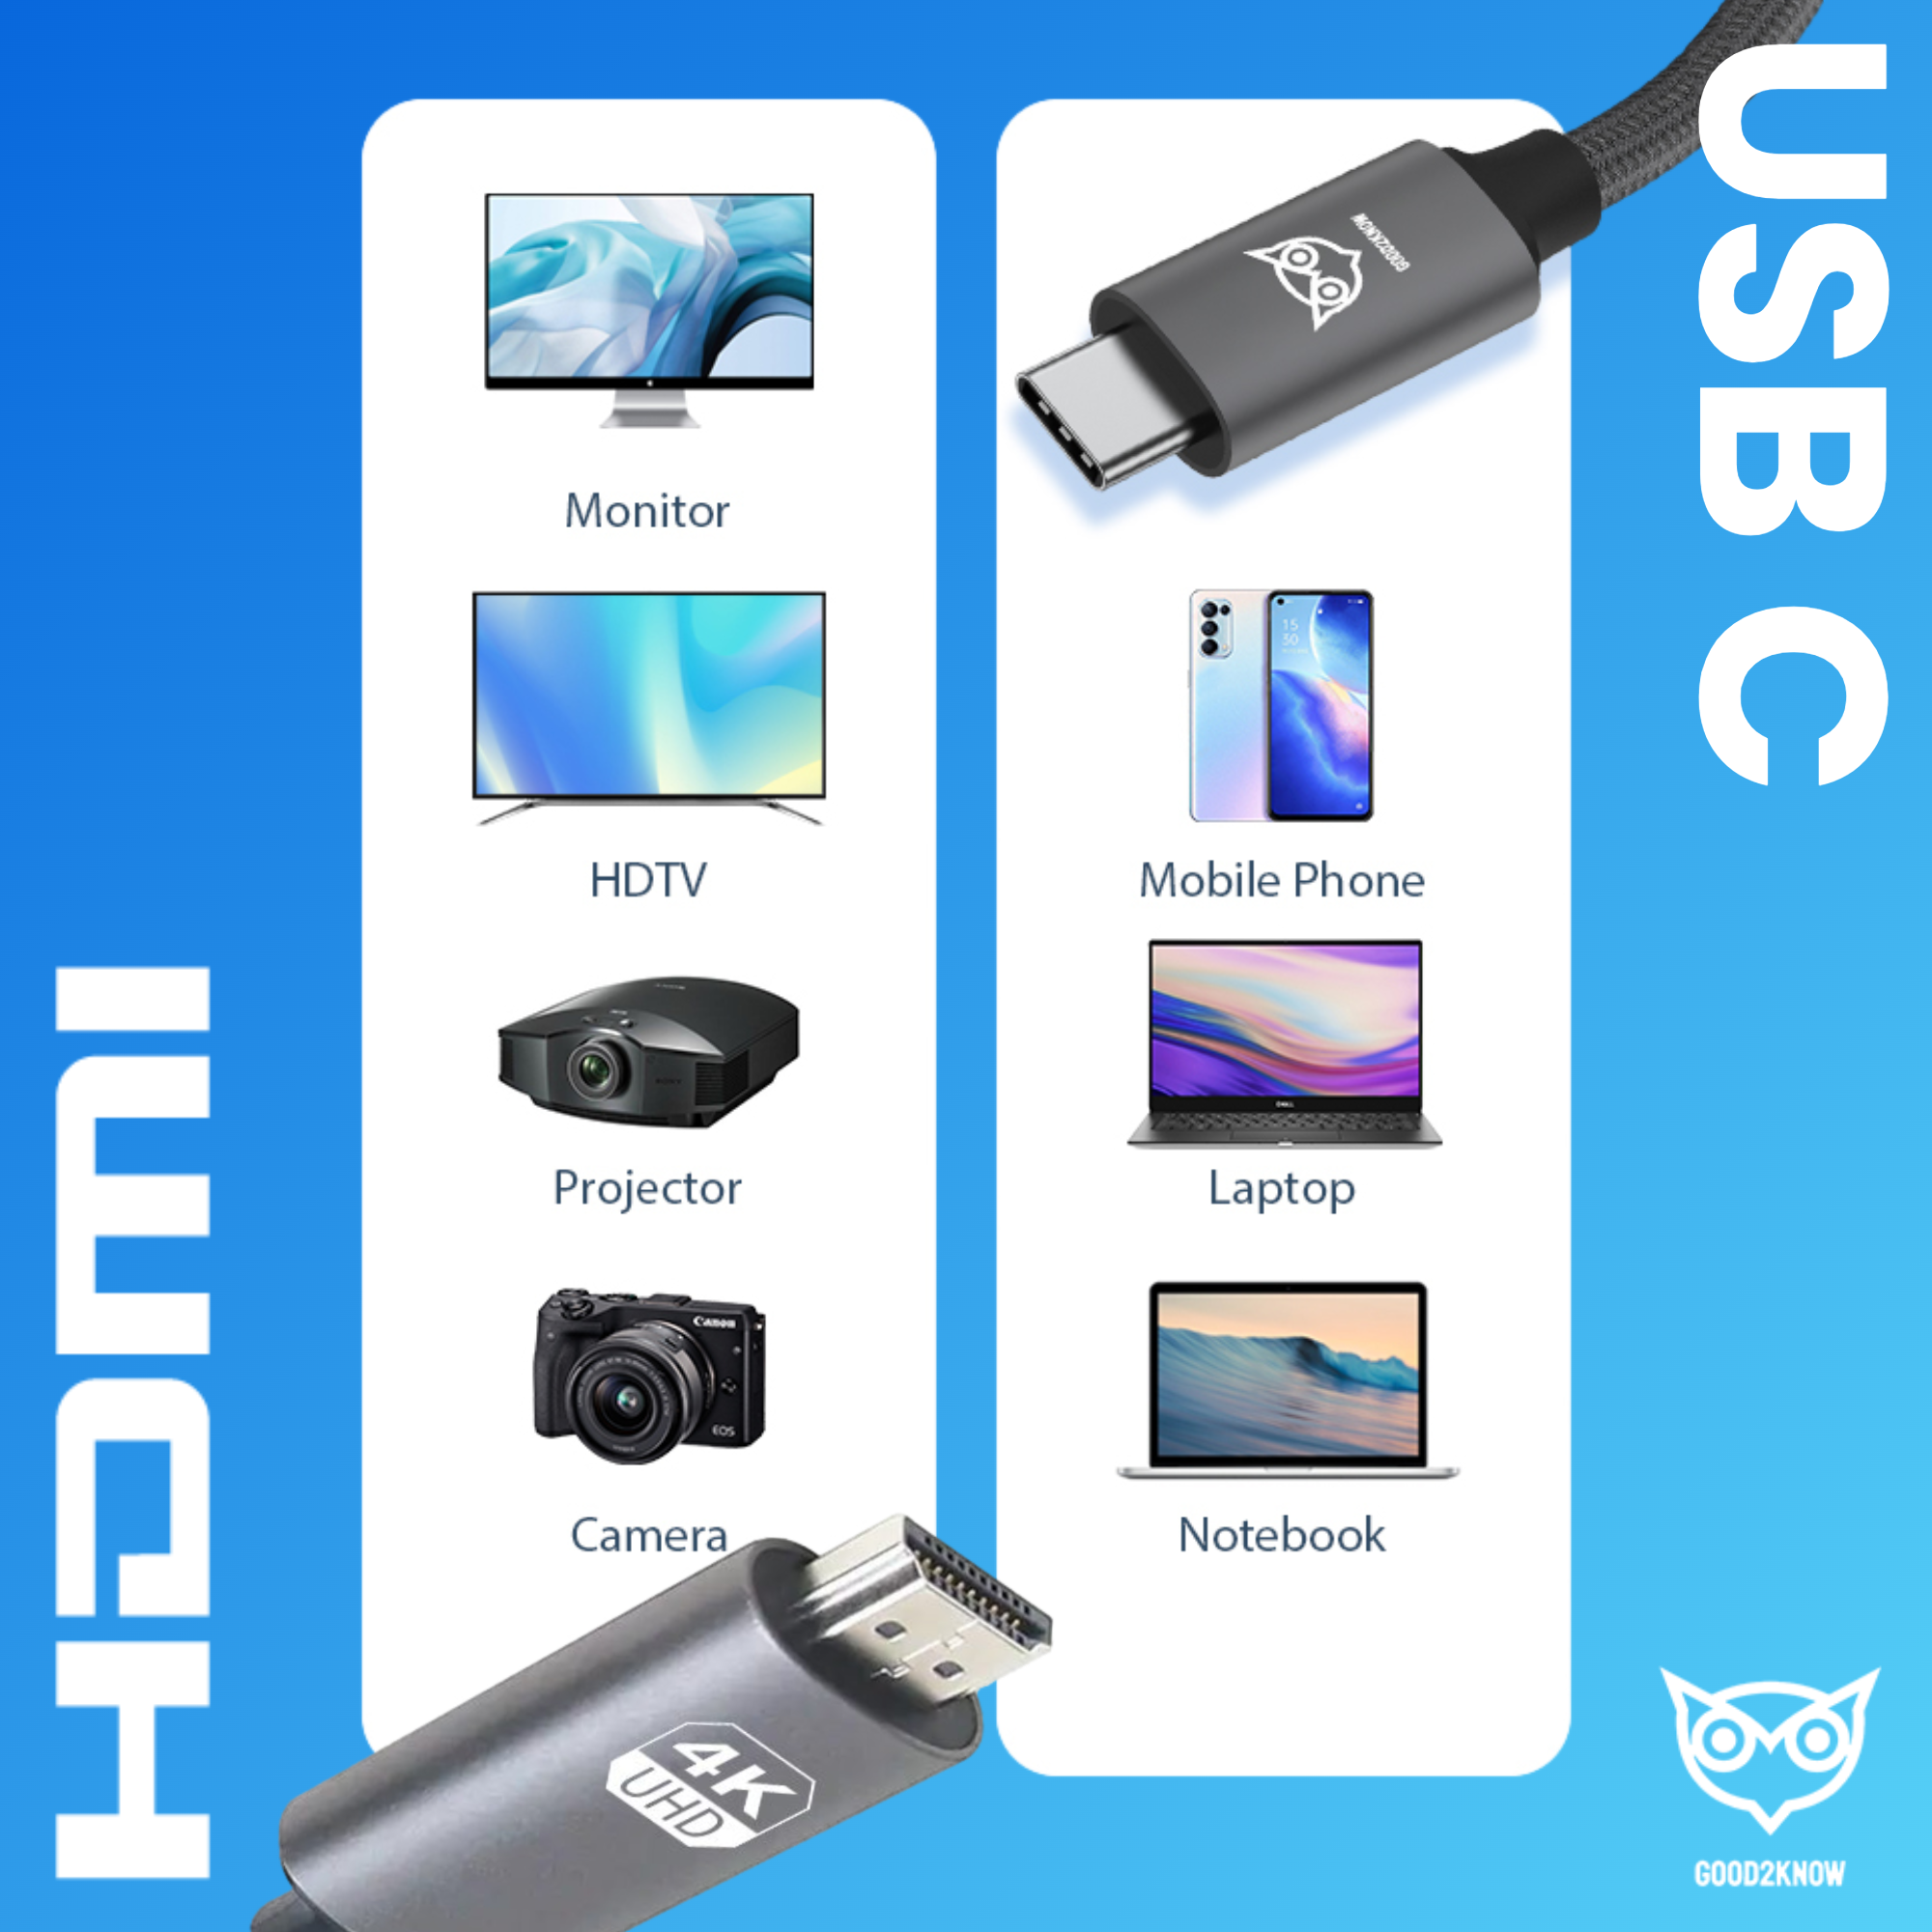 Usb c naar HDMI - 2 meter - Ultra 4k - 2k - Video kabel geschikt voor macbook pro, air - hdmi switch - usb c naar hdmi kabel